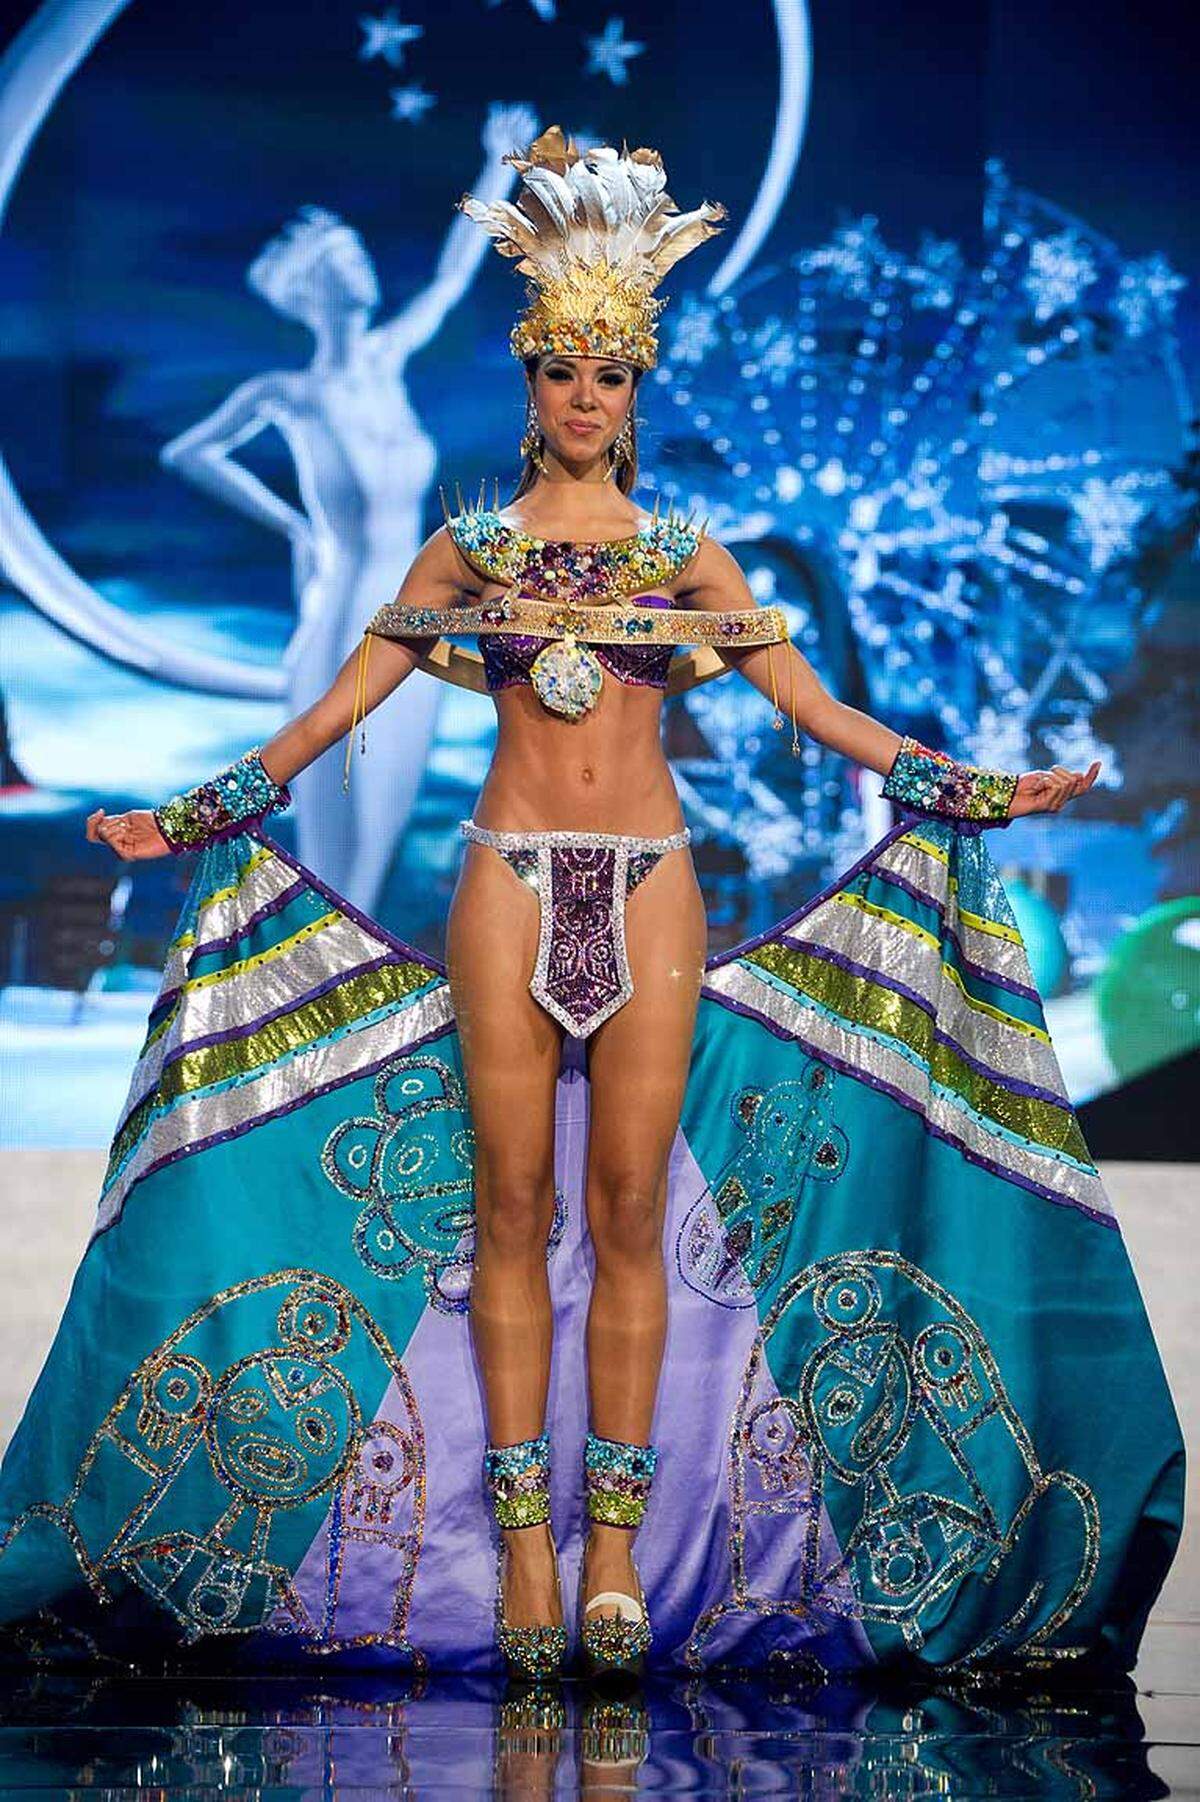 Miss Puerto Rico Bodine Koehler erobert Las Vegas im Lendenschurz. Die besten Bilder des Probelaufs zur Miss-Universe-Wahl findet man in der Regel bei der "National Costume Show".